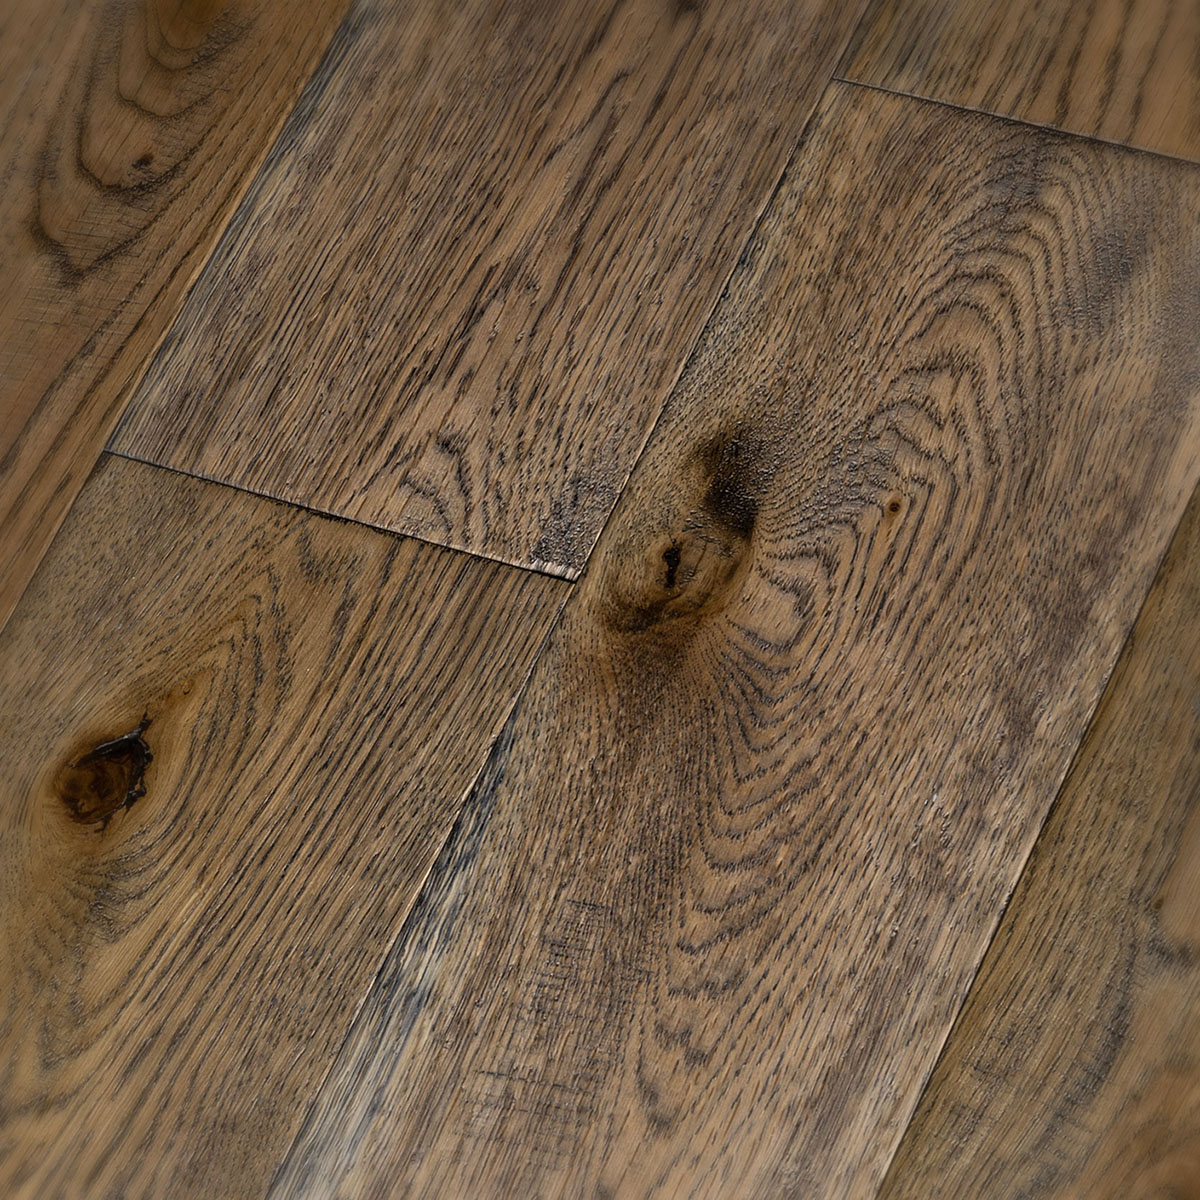 Howden - Rustic Grade Hand Distressed Engineered Floor